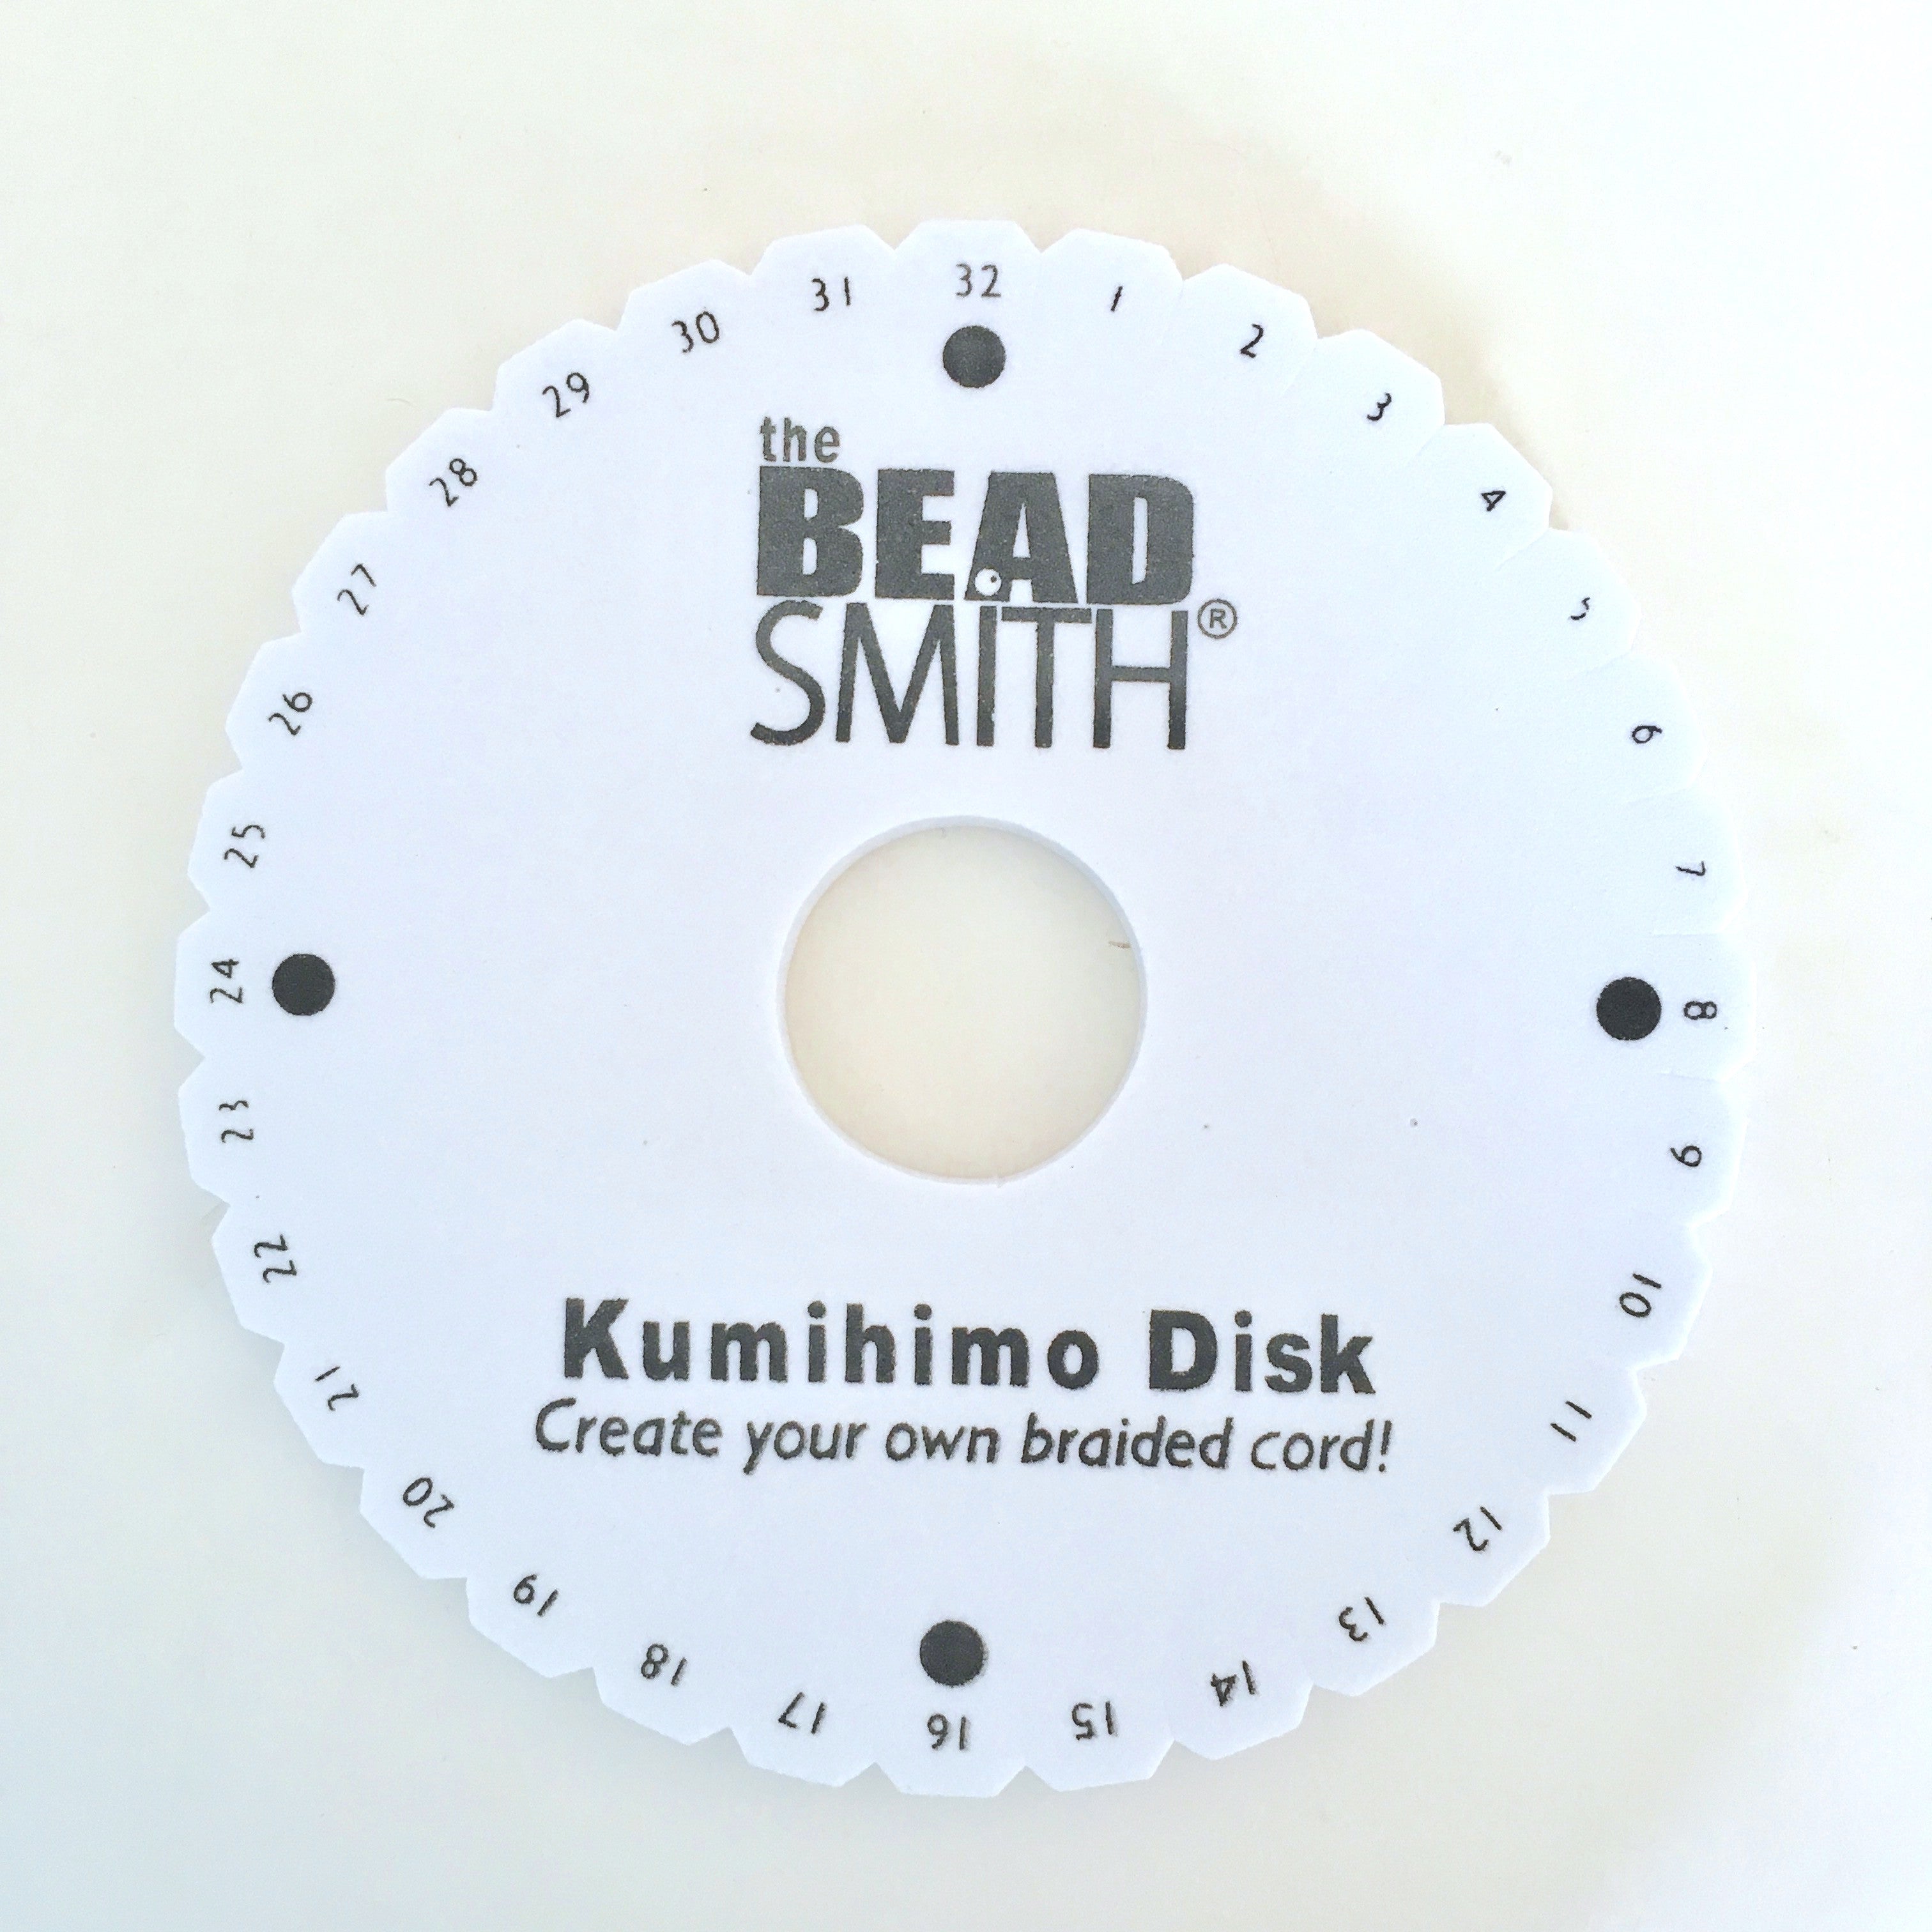 Kumihimo Disk